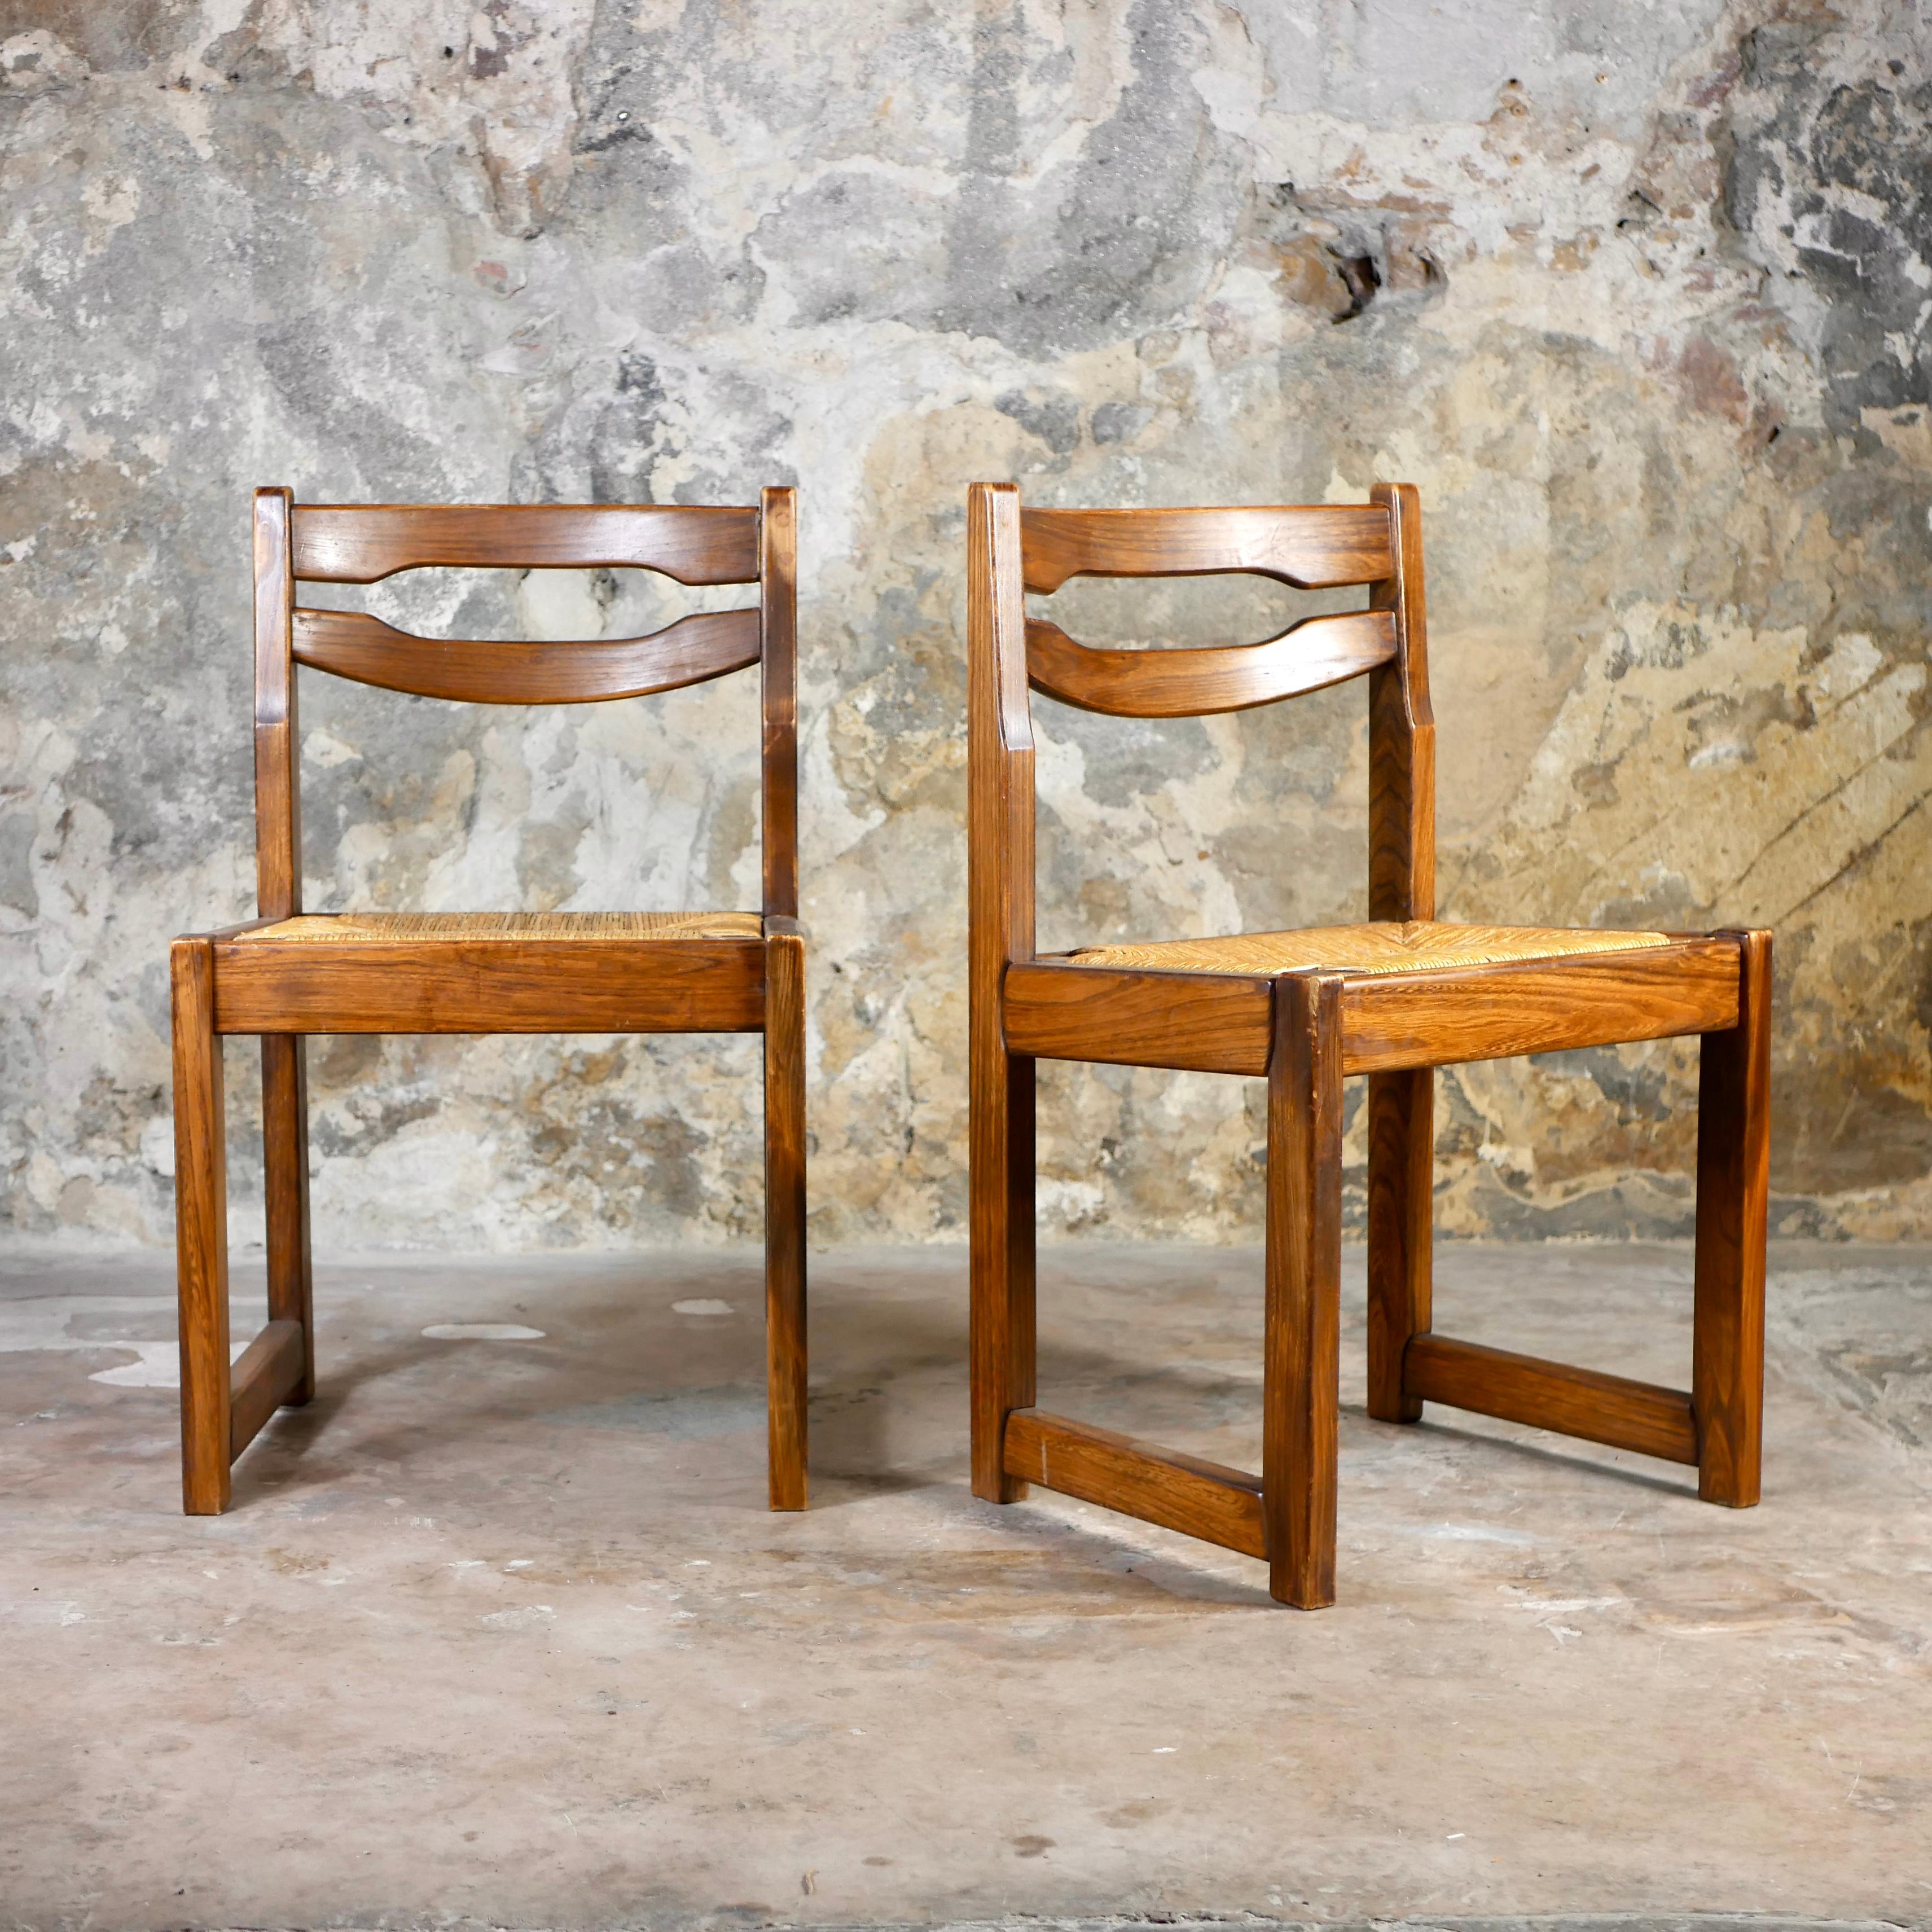 Schönes Paar von 2 Stühlen im Stil von Maison Regain, hergestellt in Frankreich in den 1970er Jahren.
Sitz aus Seil, Struktur aus Ulme. 
Wir lieben die Holzmaserung und den Farbton.
Insgesamt guter Zustand, Seil verwendet, einige Spuren von